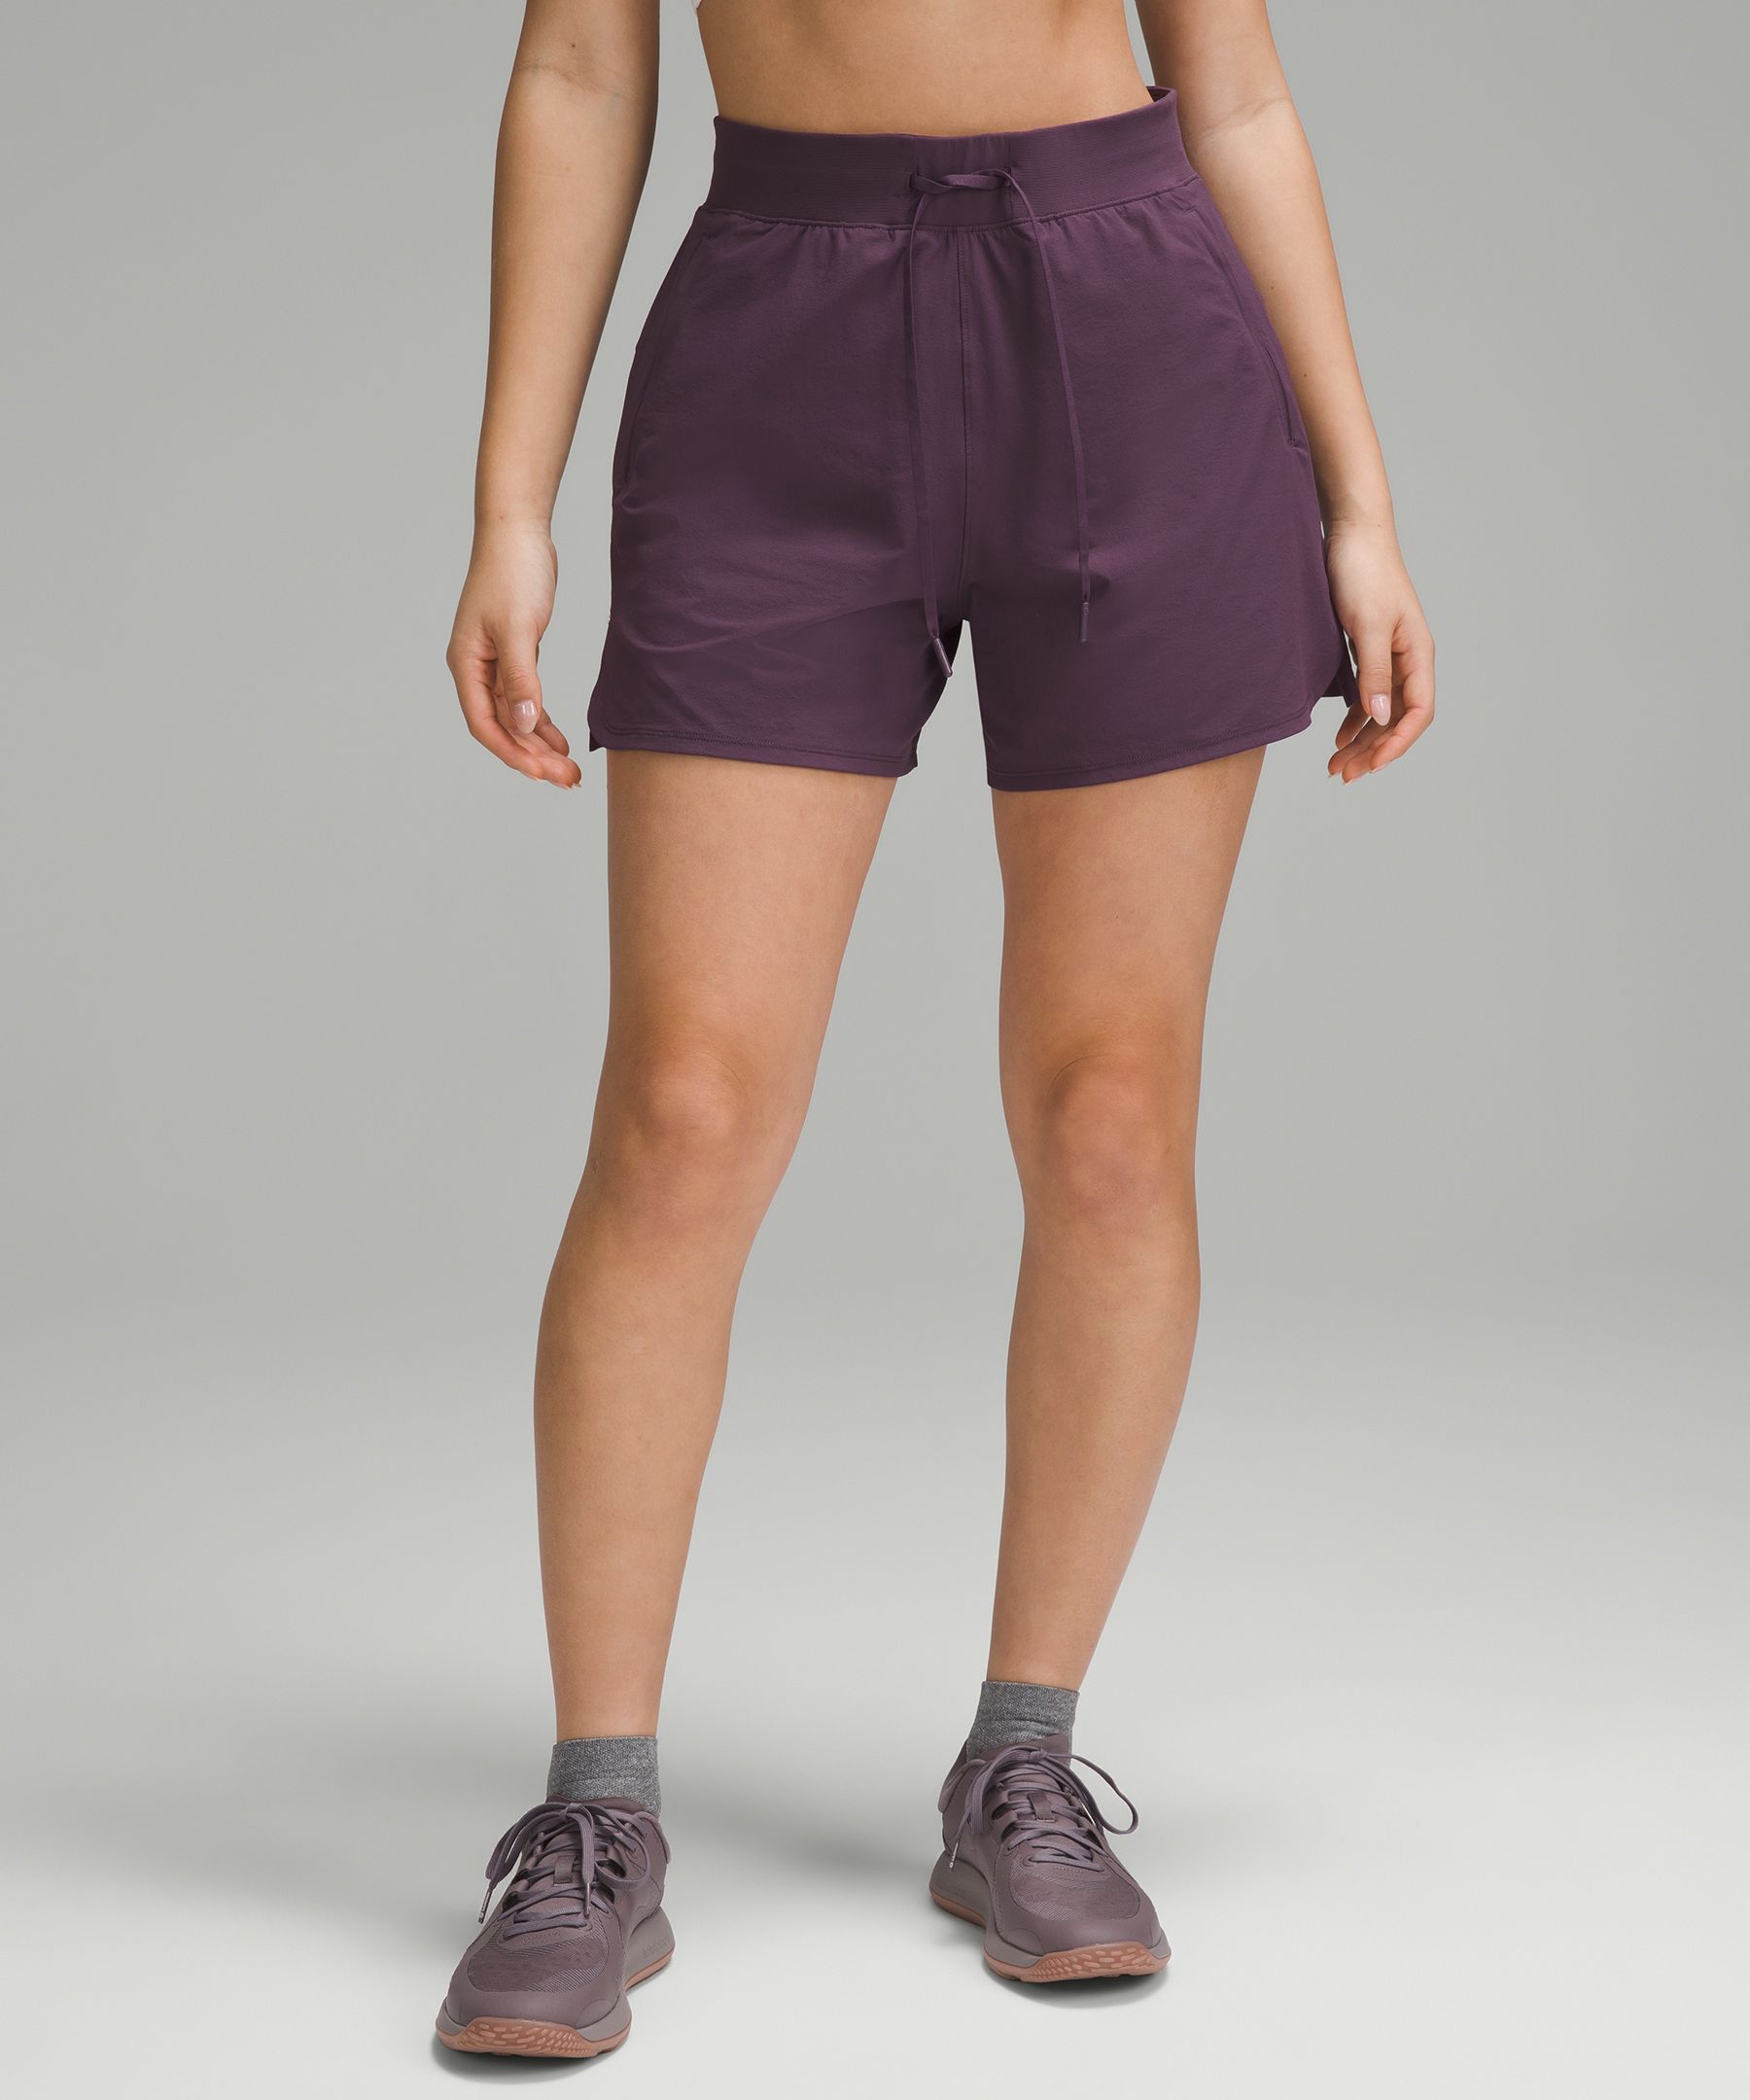 Lululemon Seawheeze purple tracker shorts size 6